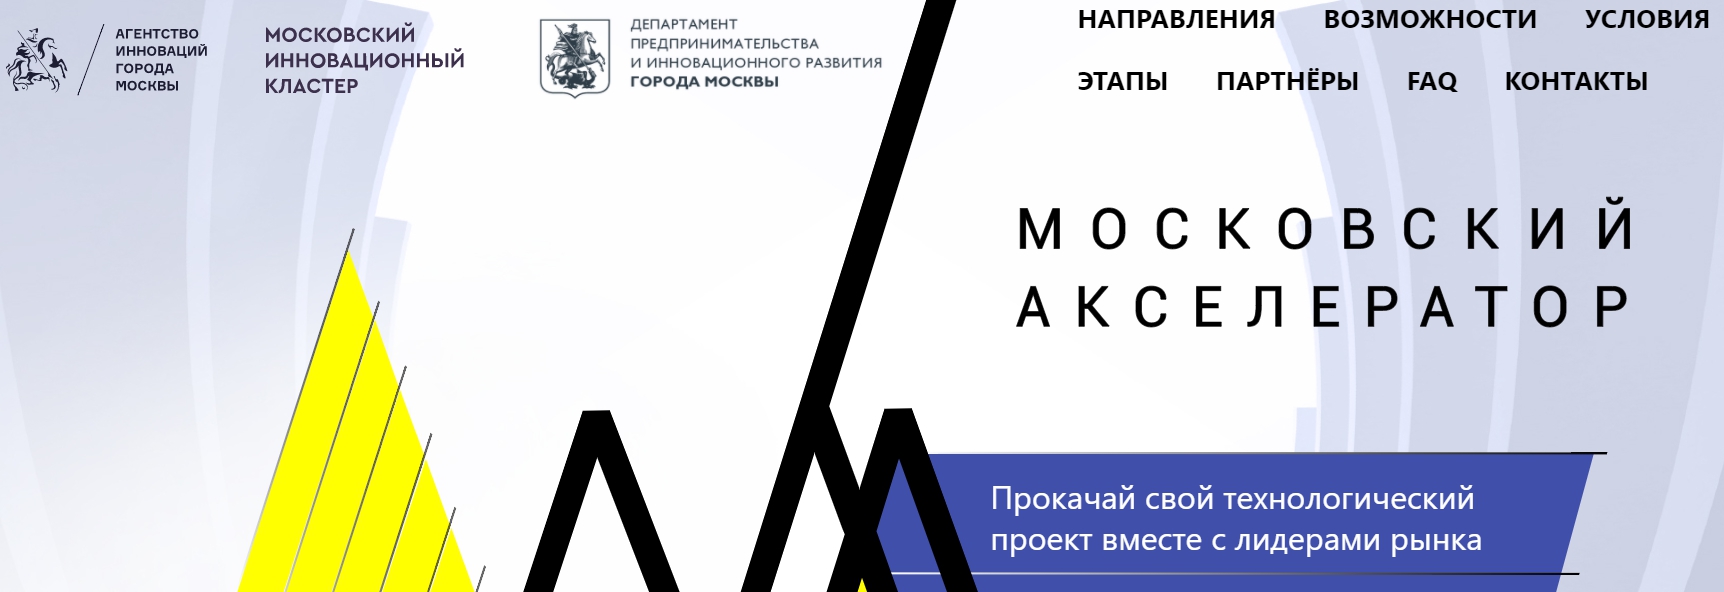 Проект ViewApp успешно прошел отбор на участие в Московском акселераторе